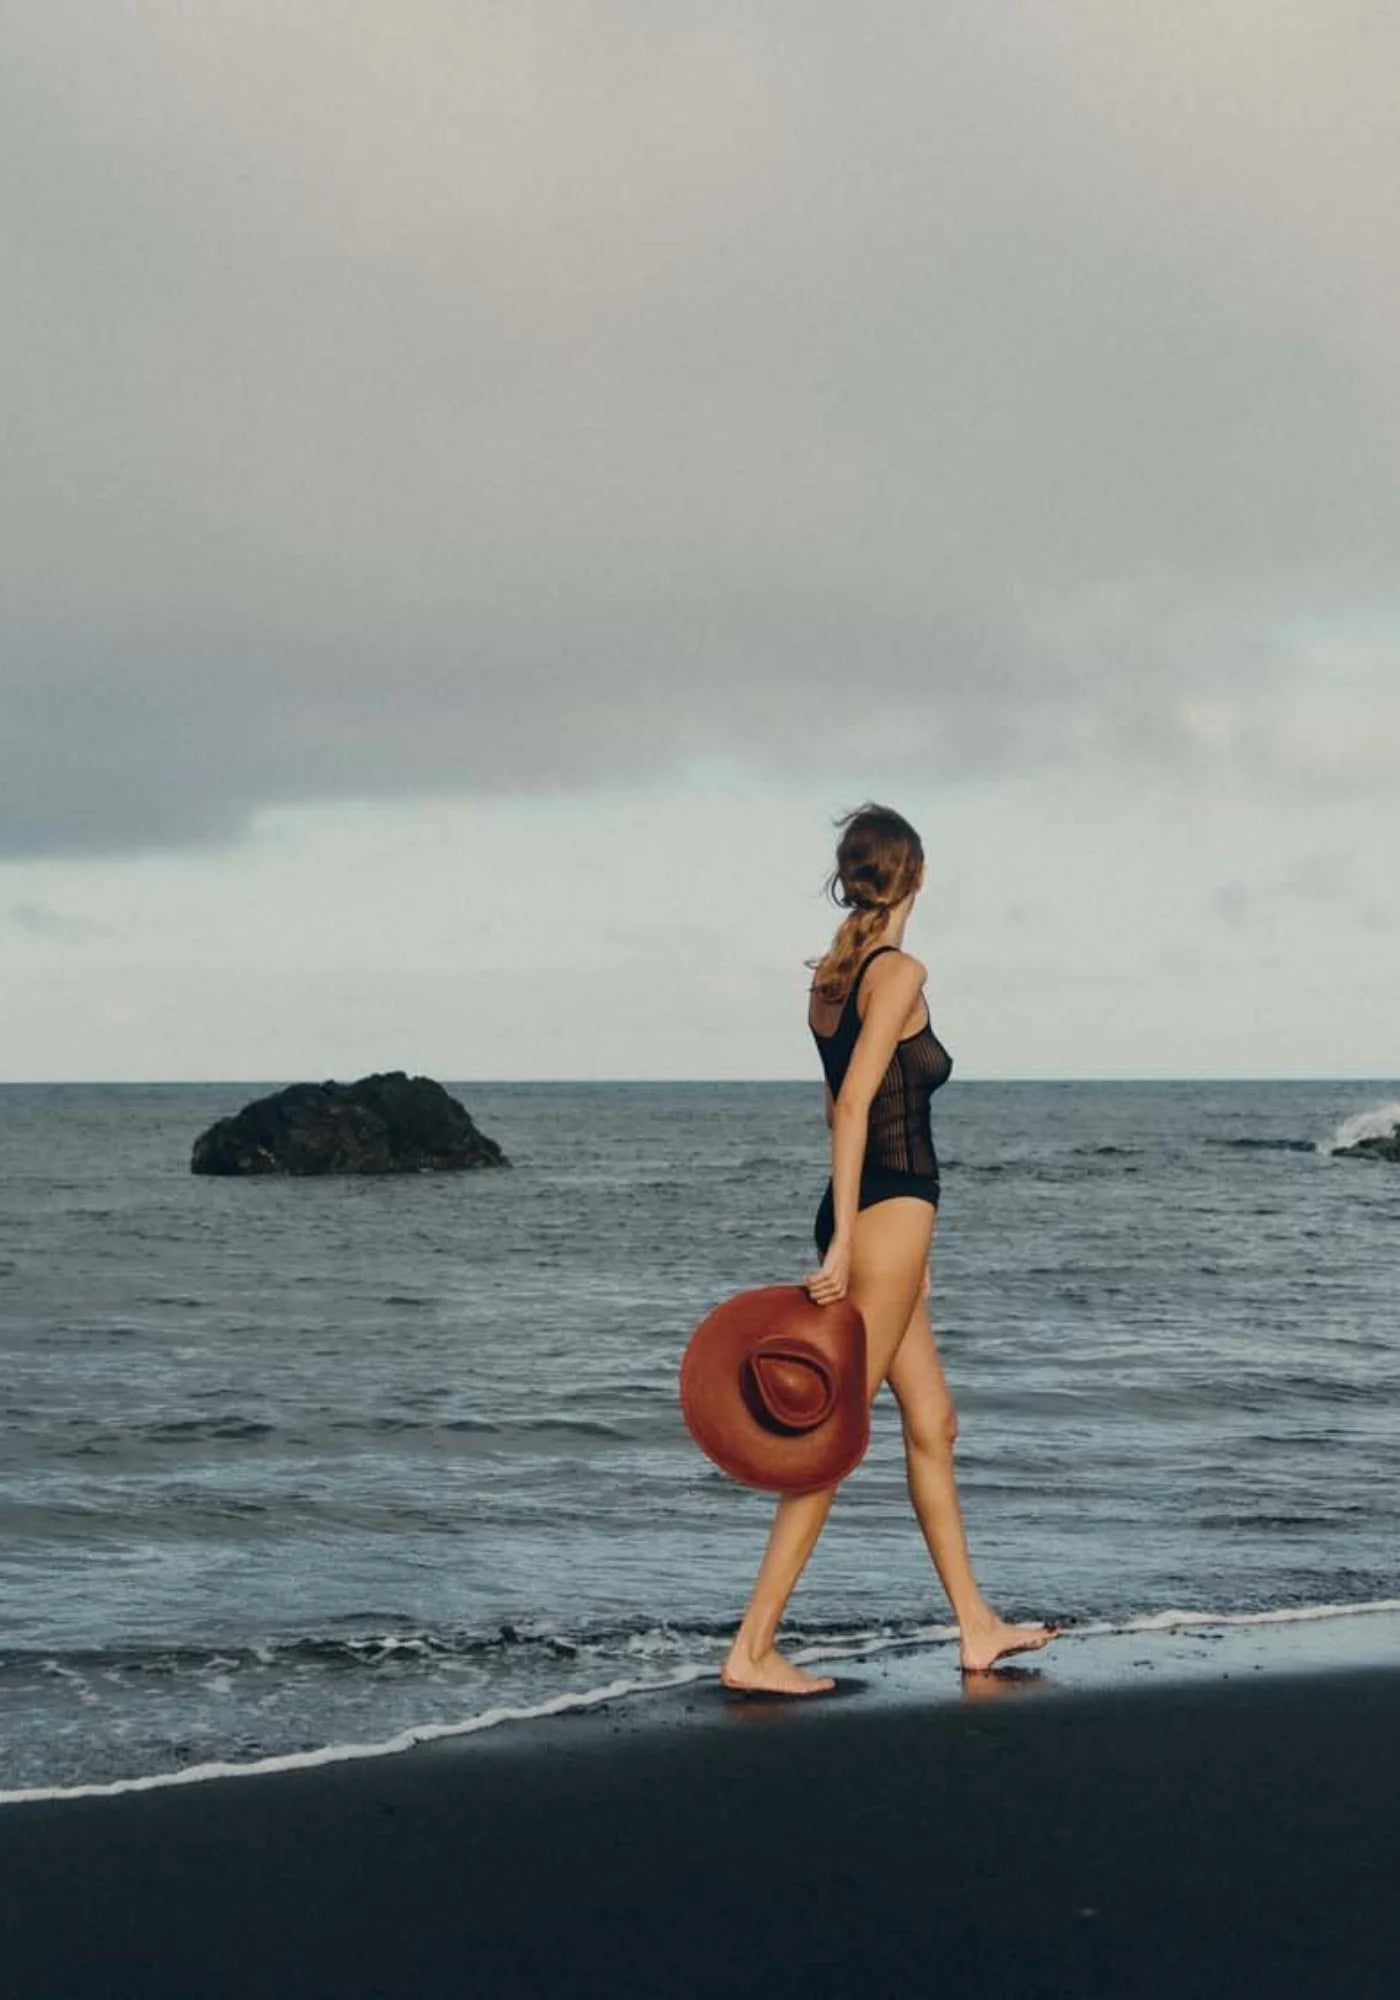 La femme marche sur la plage au bord de l'eau et porte à la main le chapeau de paille Pat auburn de chez Van Palma